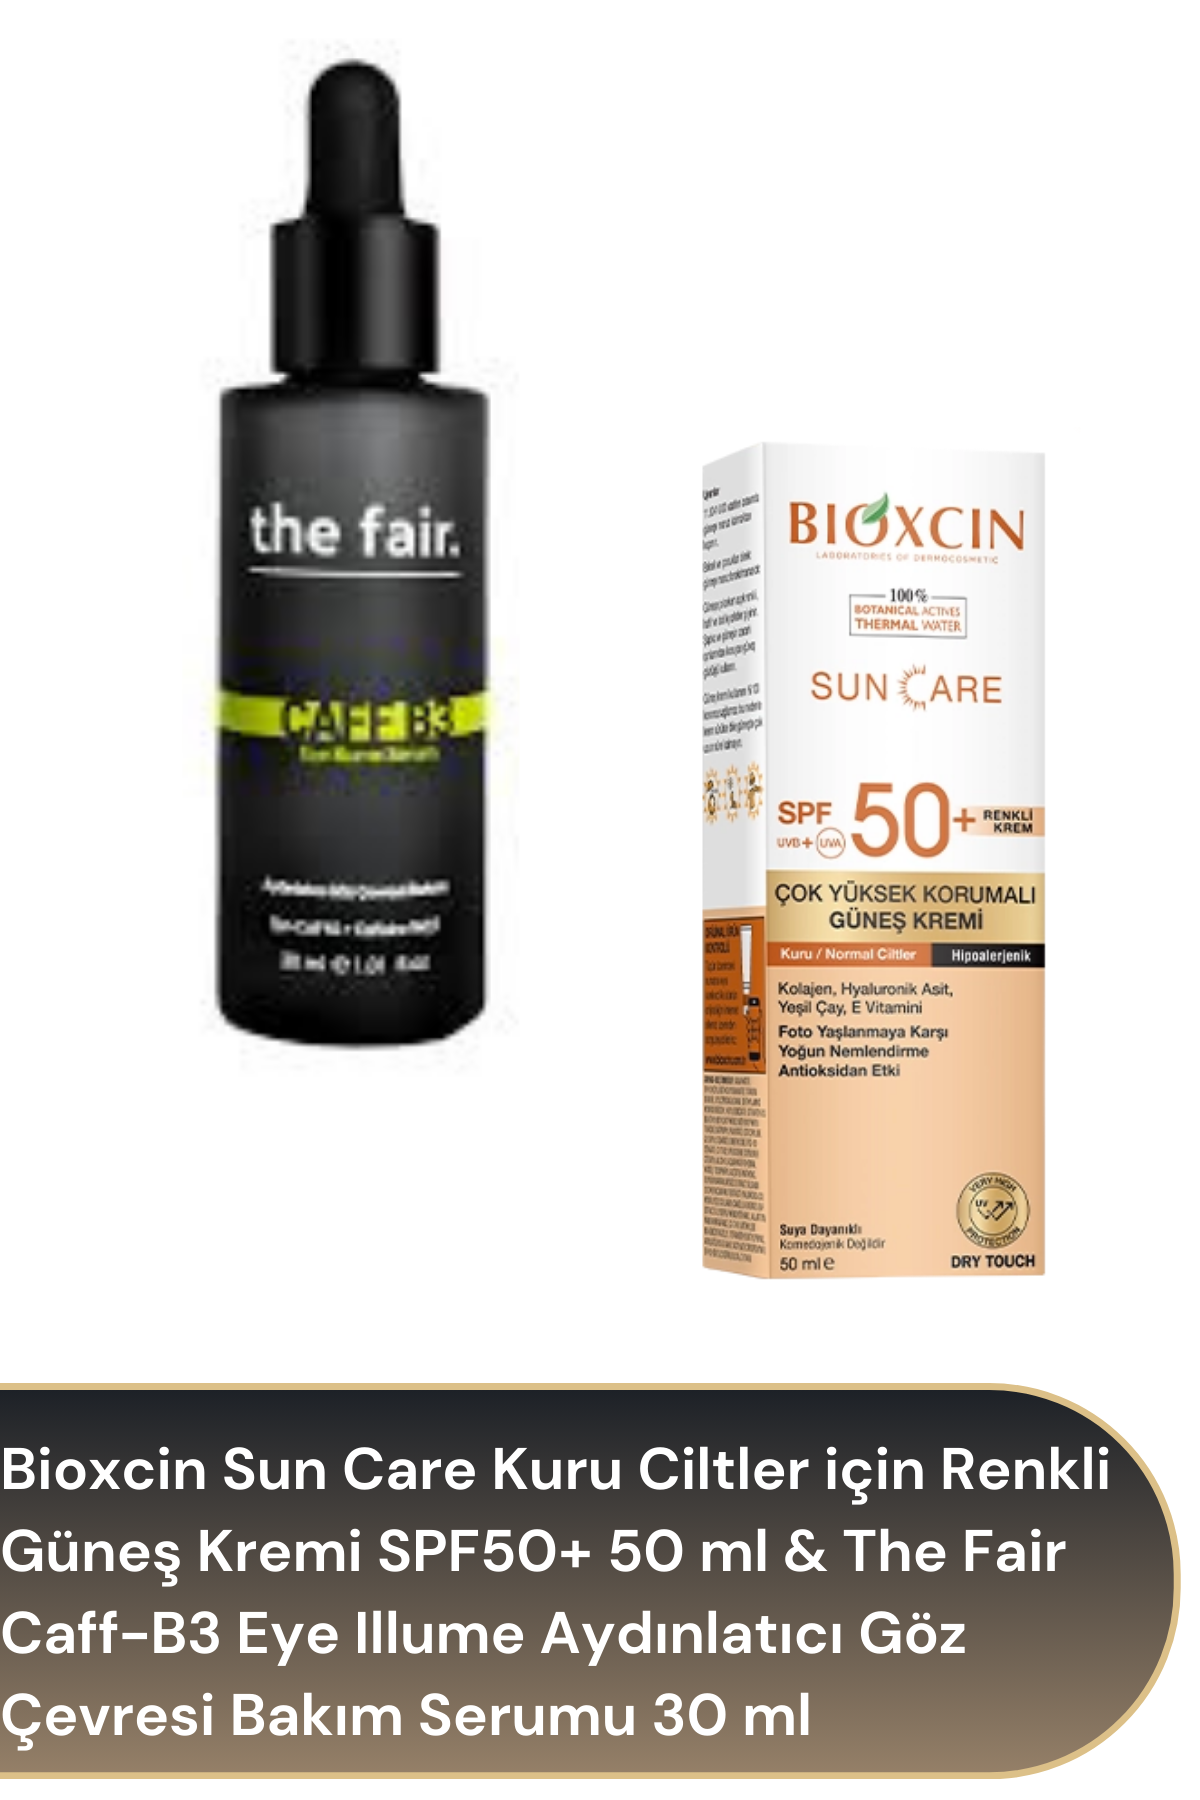 Bioxcin Sun Care Kuru Ciltler için Renkli Güneş Kremi SPF50+ 50 ml & The Fair Caff-B3 Eye Illume Aydınlatıcı Göz Çevresi Bakım Serumu 30 ml Avantajlı Paket